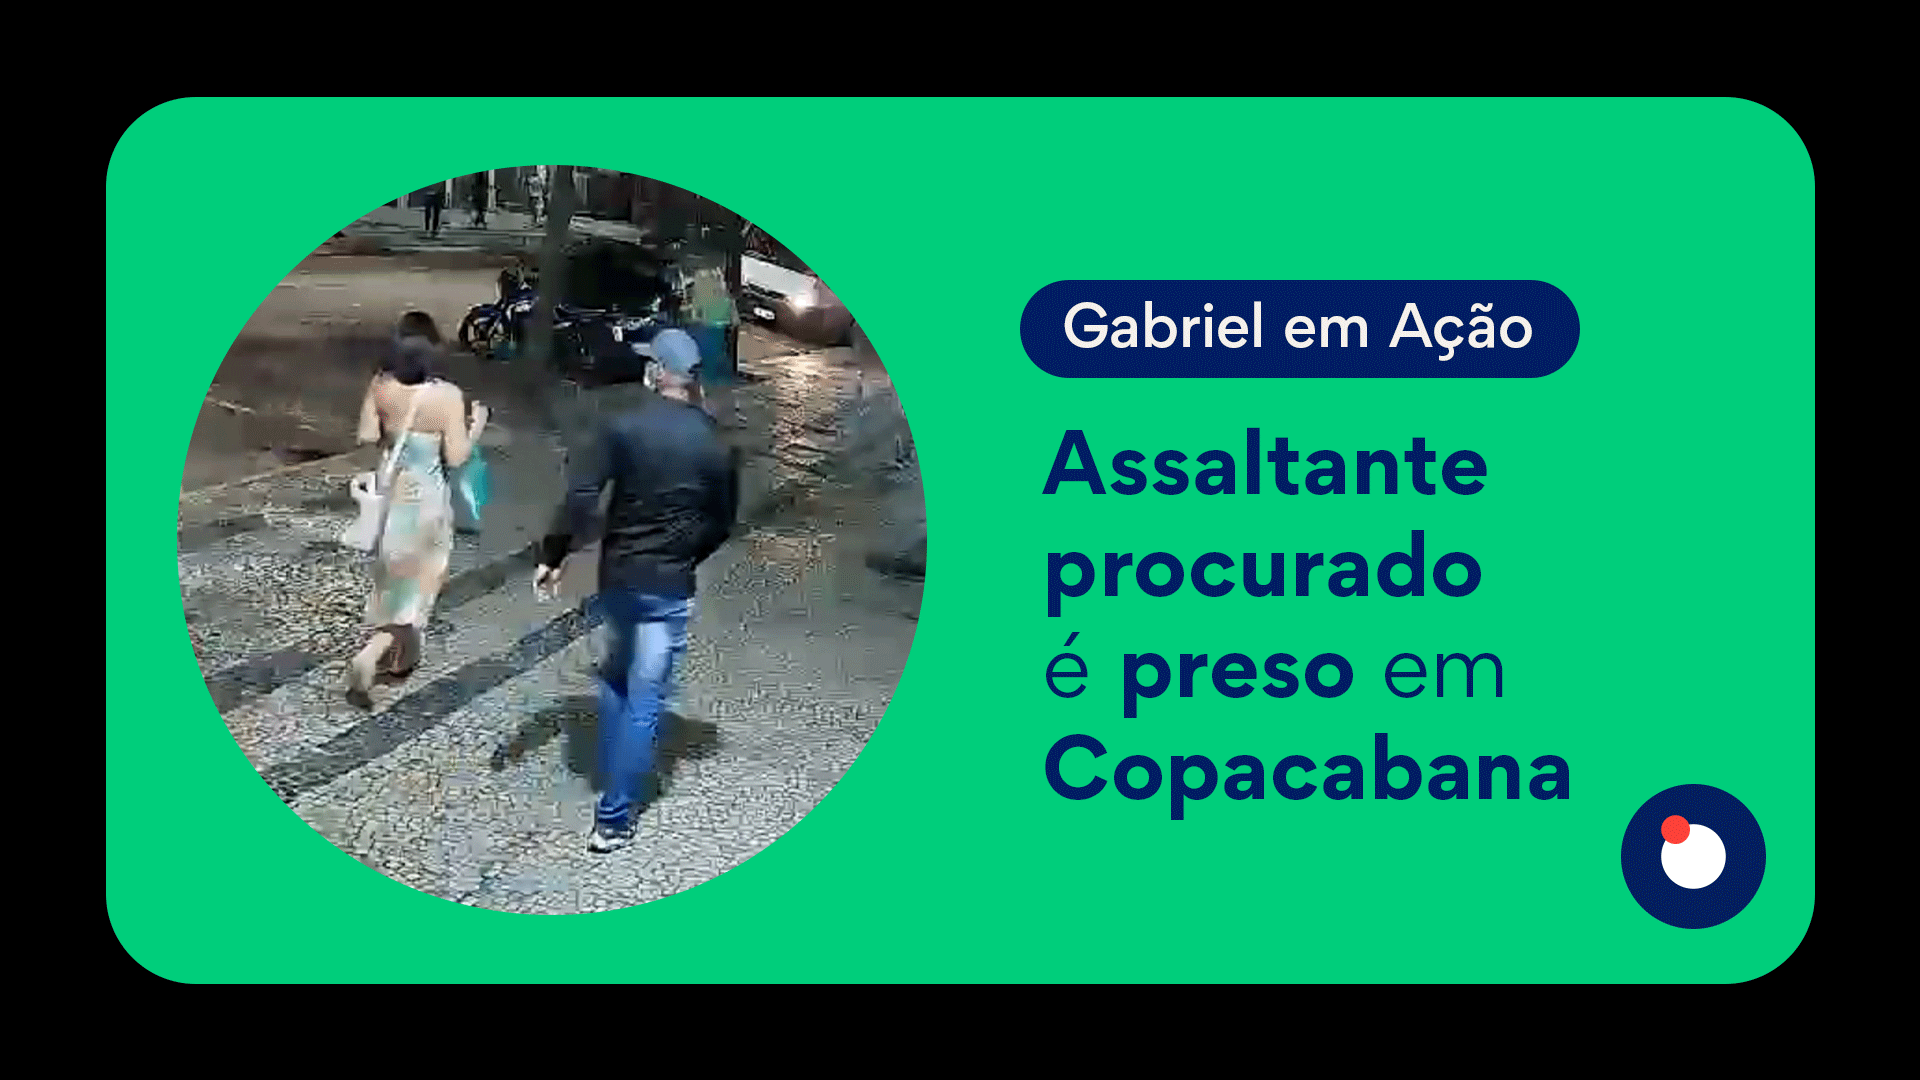 Assaltante procurado é preso em Copacabana